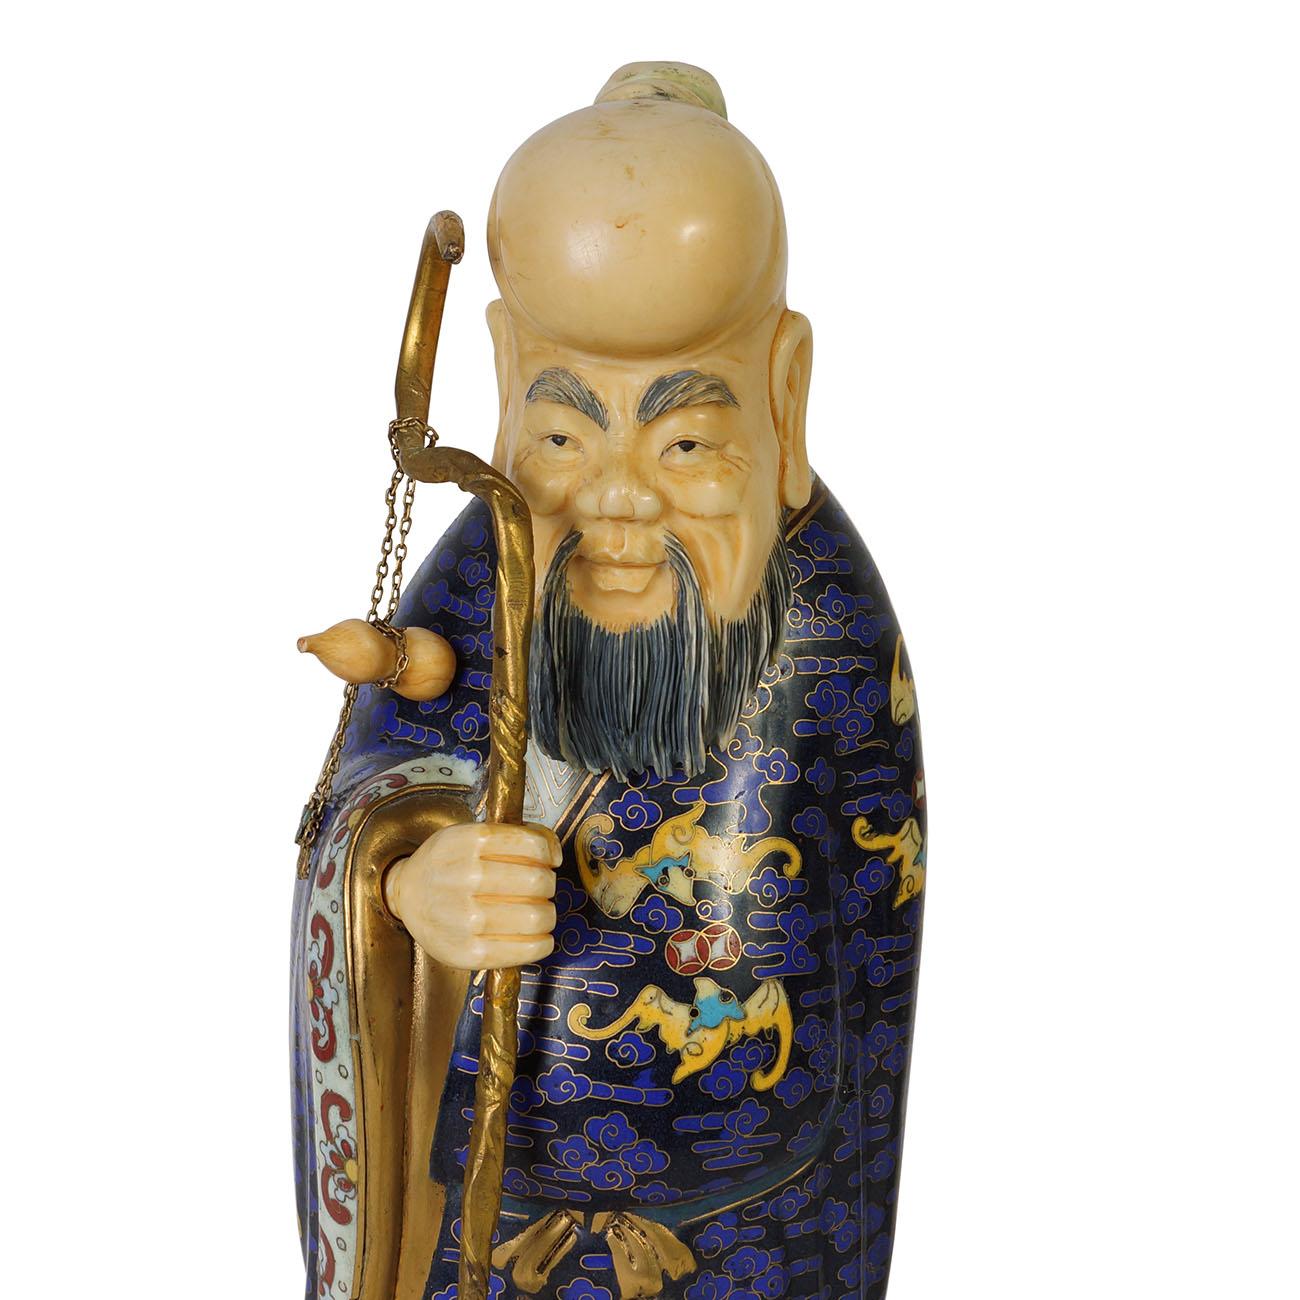 Cette magnifique statuette chinoise ancienne en cloisonné, étoile de la longévité, a été réalisée à la main en cloisonné de cuivre doré. Ce support Étoile de longévité a des œuvres d'art cloisonnées très détaillées à la main sur toute sa surface. Il